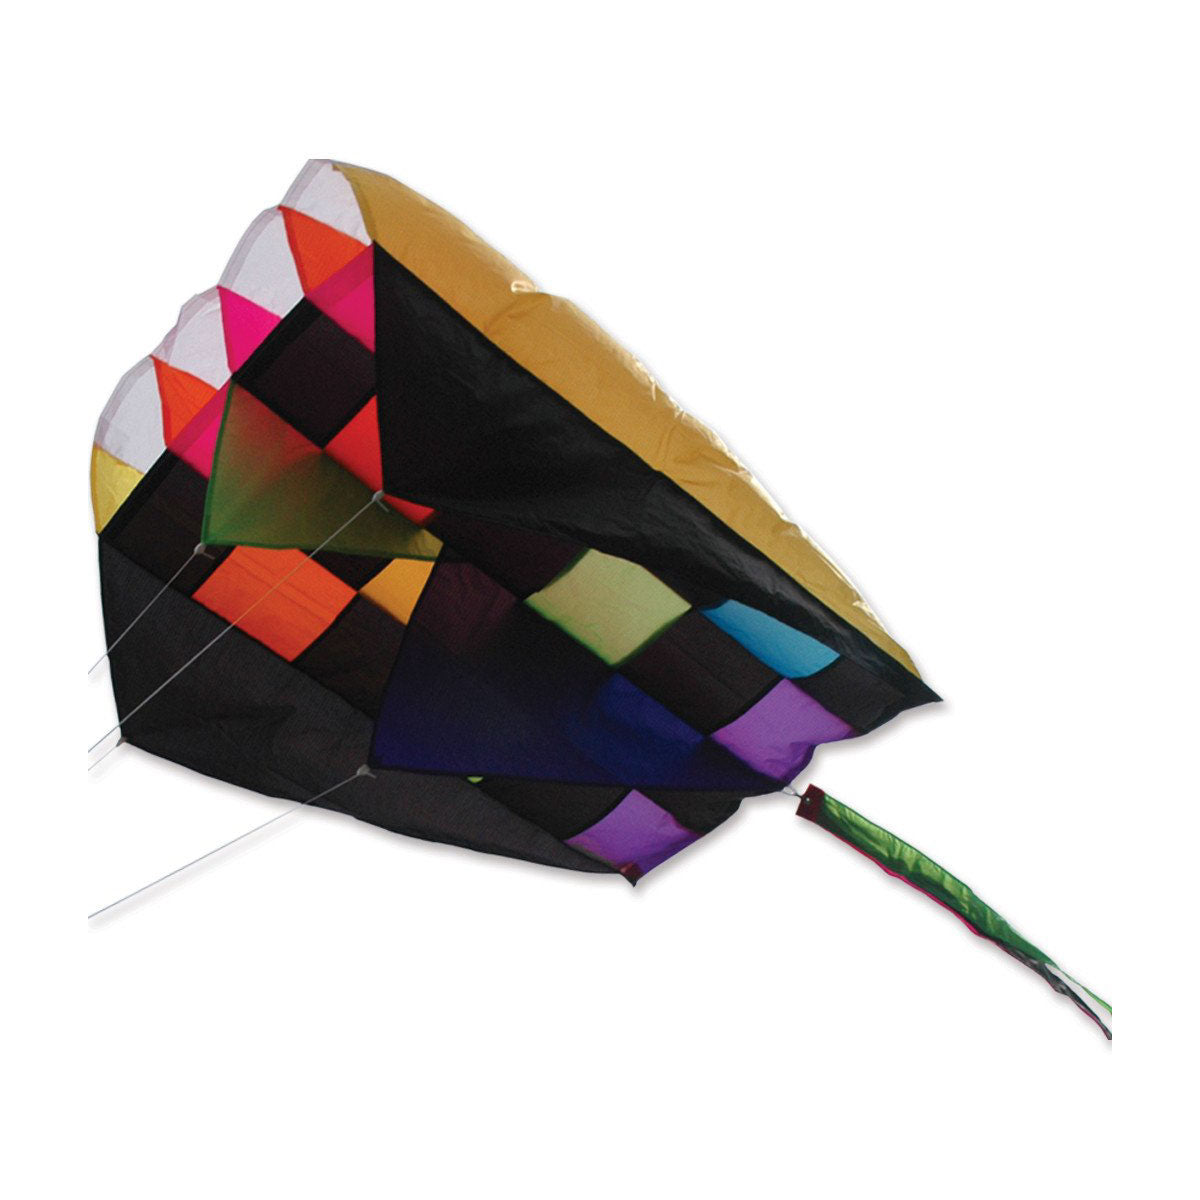 Rainbow Tecmo Parafoil 2 Kite from Premier Kites